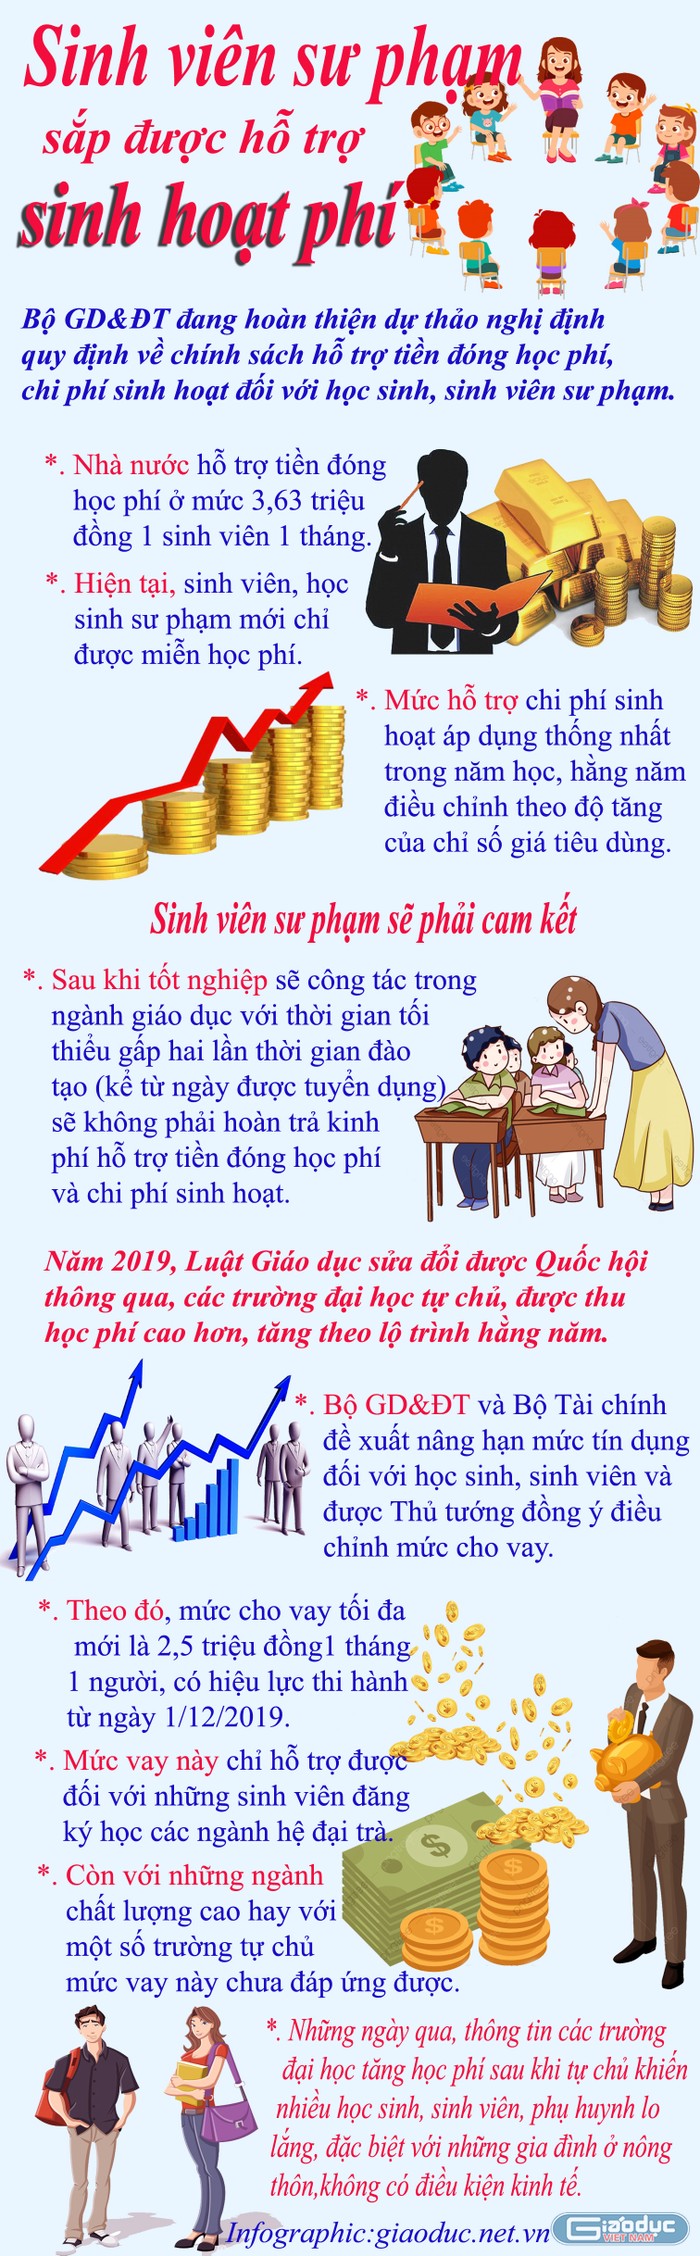 Infographic: Tùng Dương